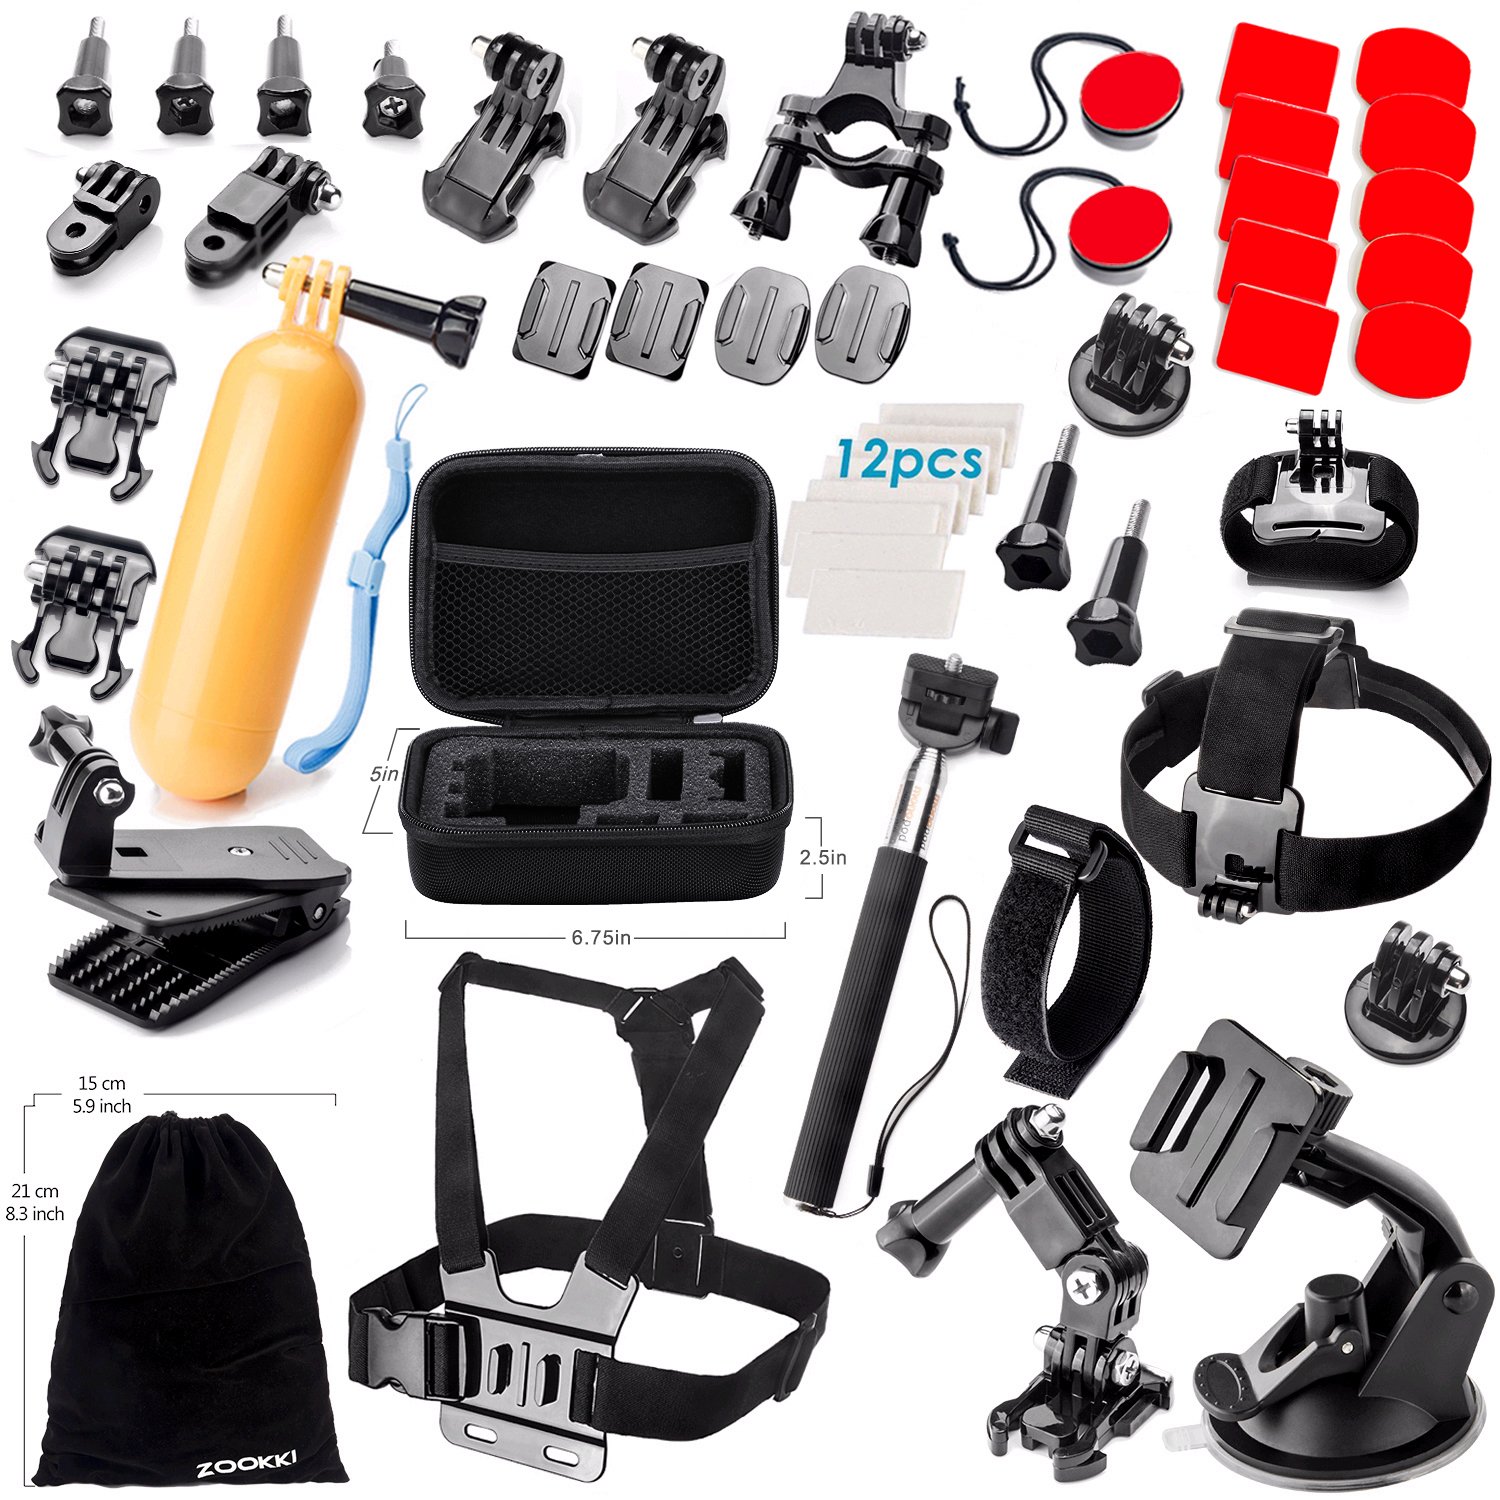 Zookki Accessories Kit for GoPro Hero 5 4 3+ 3 2 1 Black Silver SJ4000 SJ5000 SJ6000